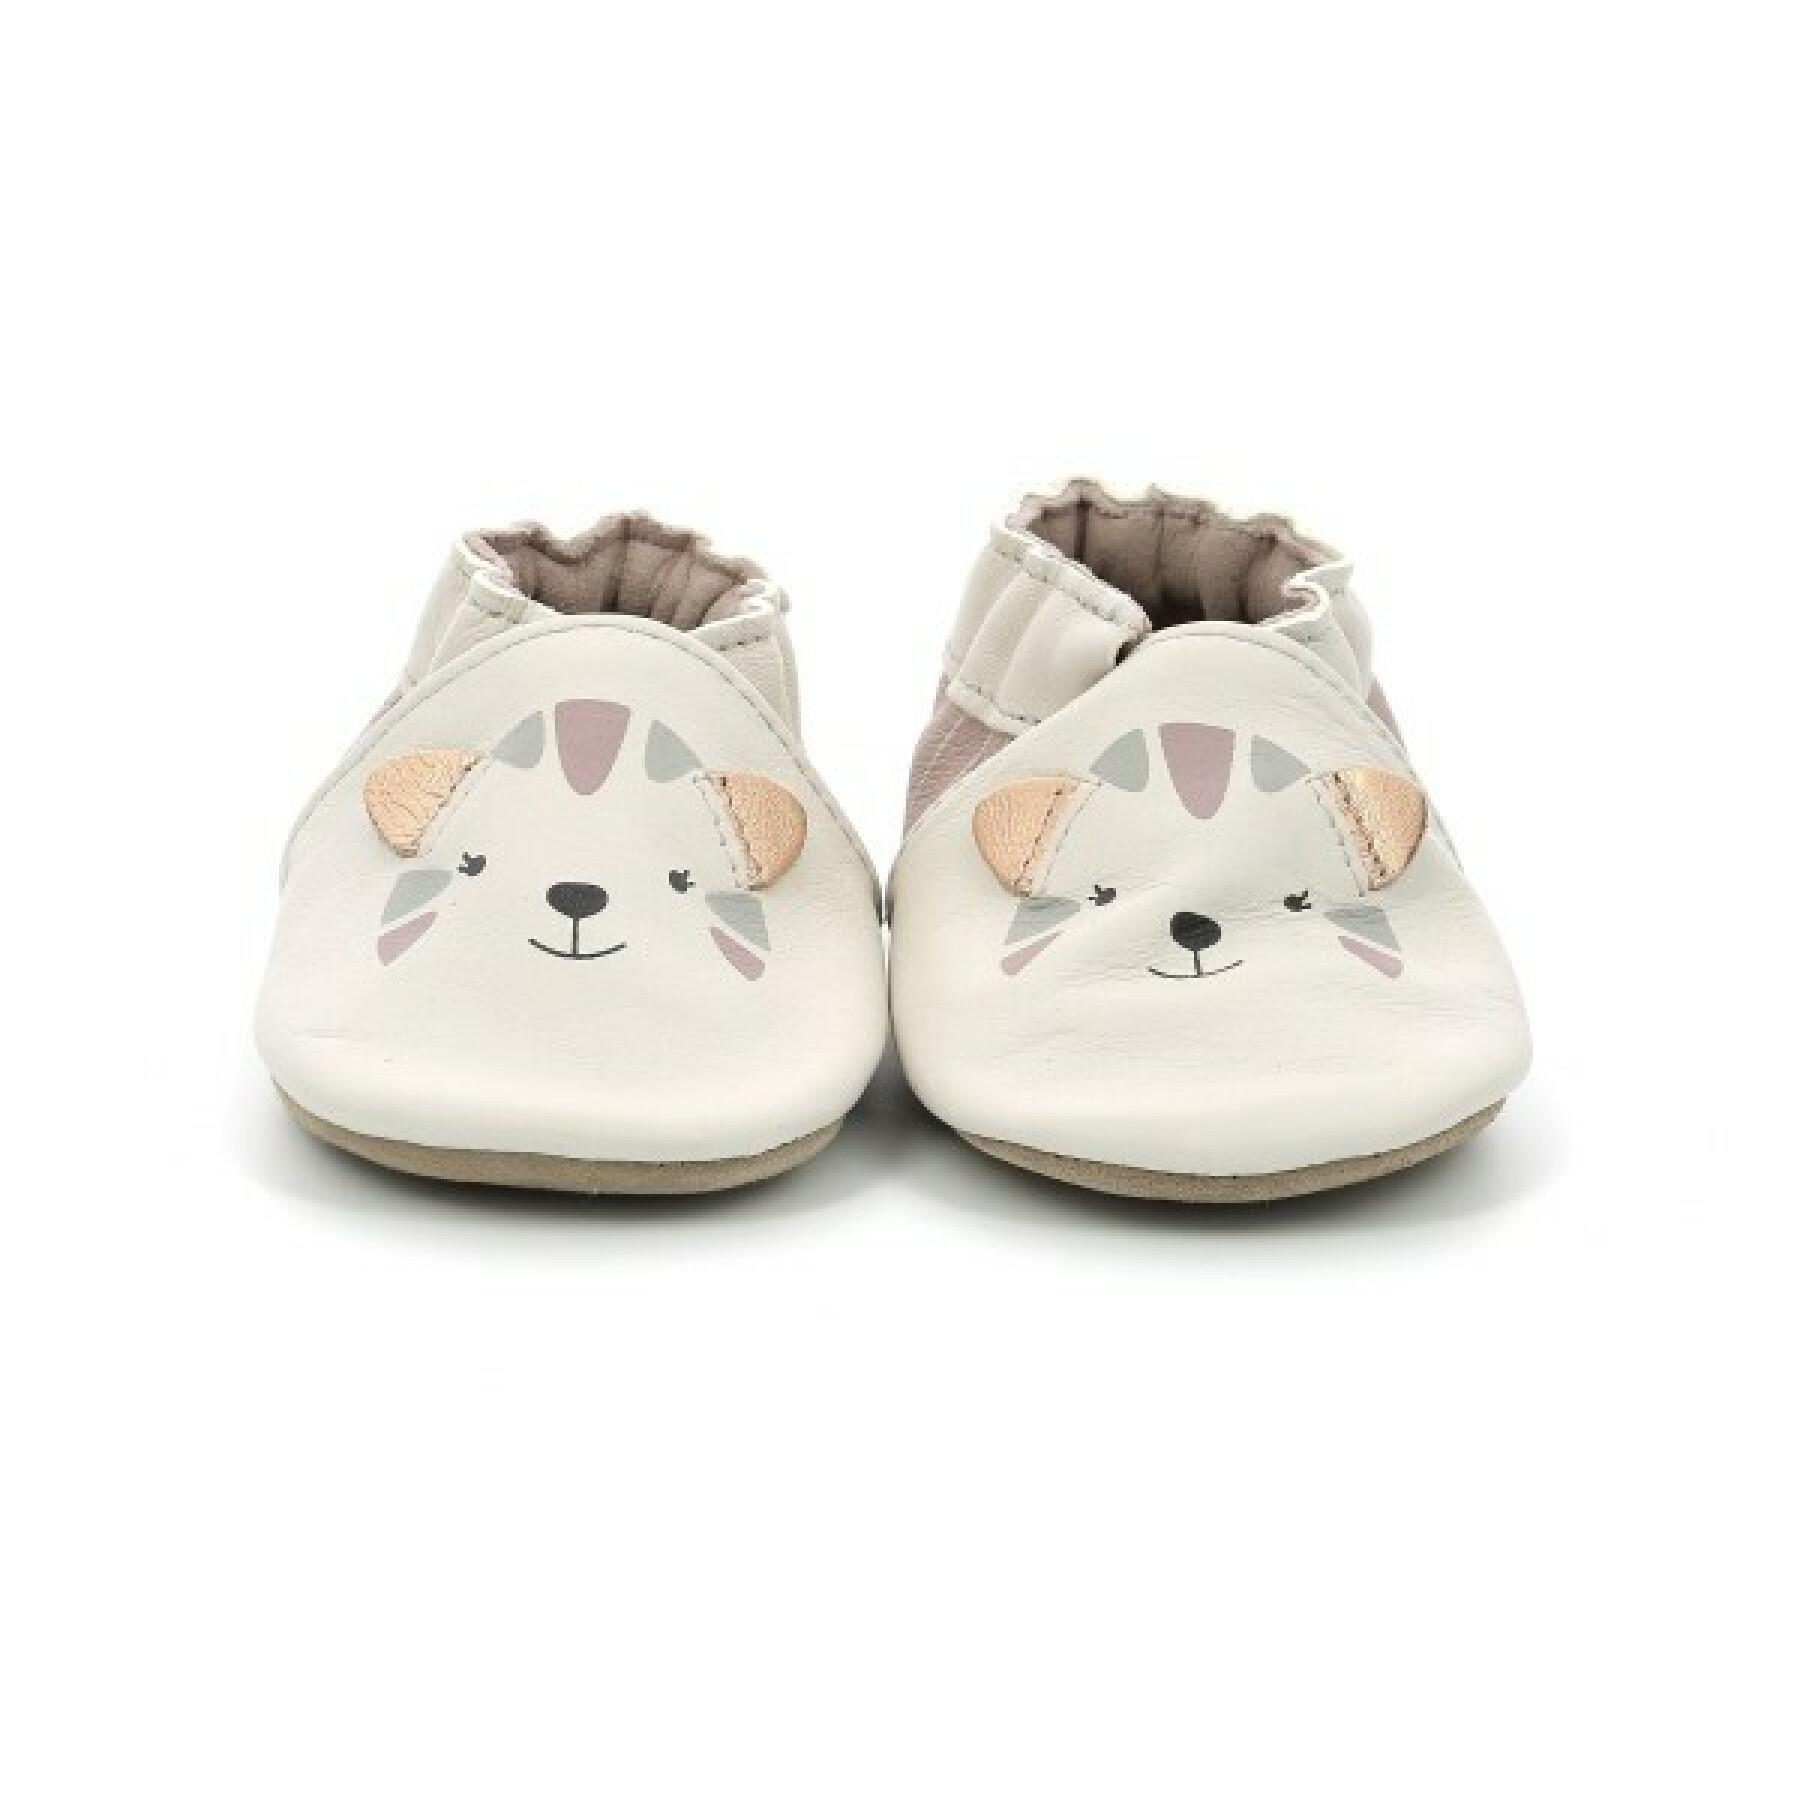 Zapatillas de bebé Robeez charming cats